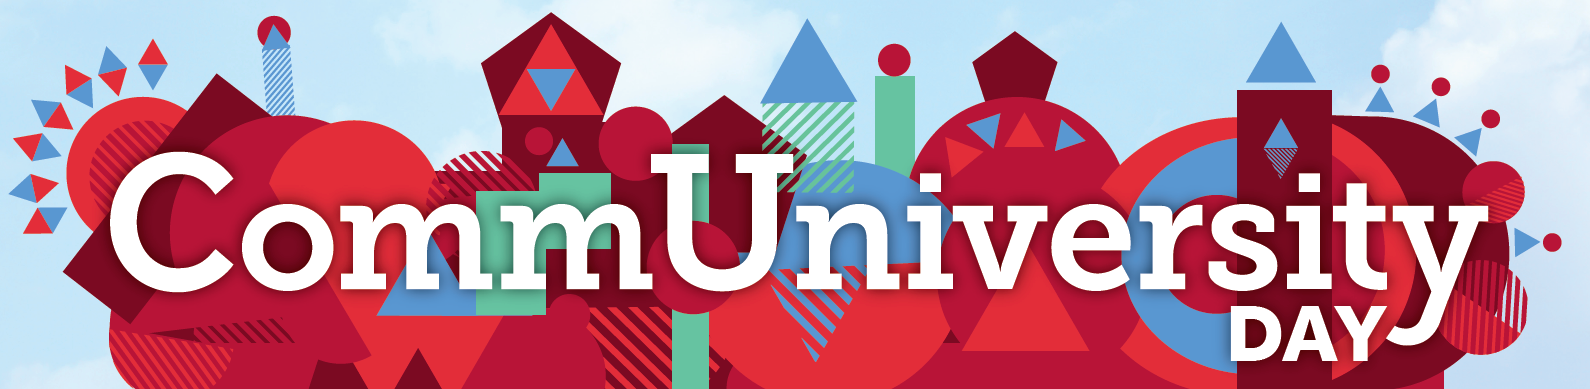 CommUniversity Day Banner